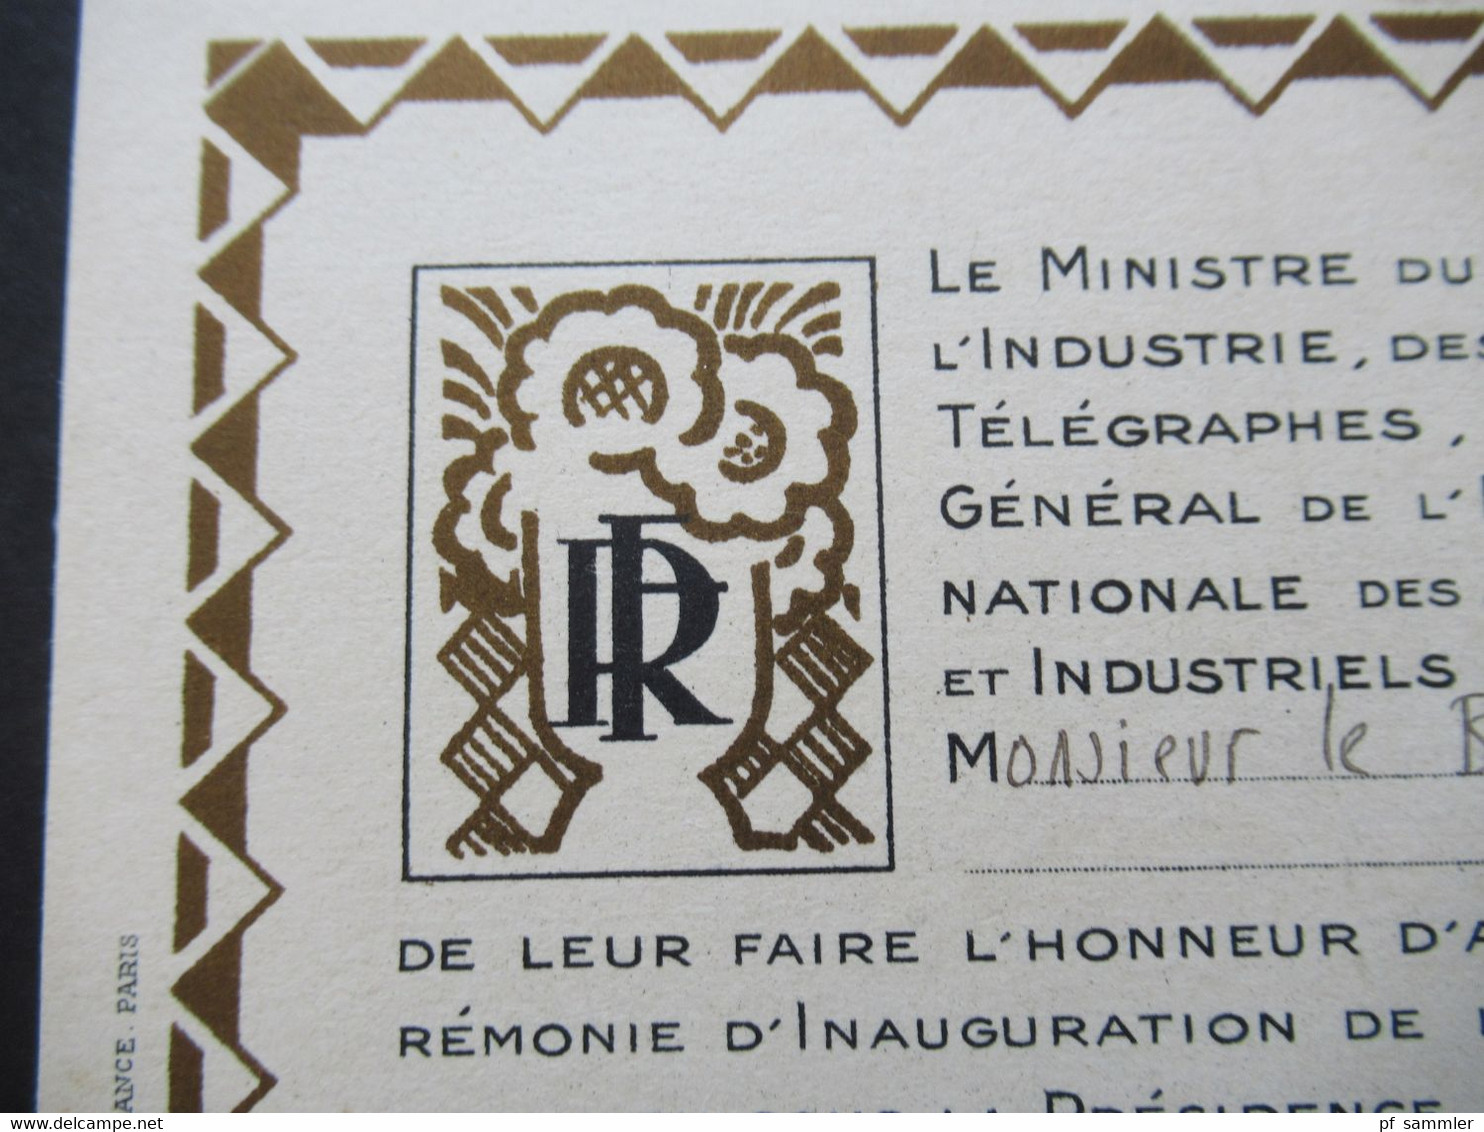 1925 originale Einladungskarte mit Faltblatt Exposition Internationale des Arts Decoratif et Industriels Modernes Paris